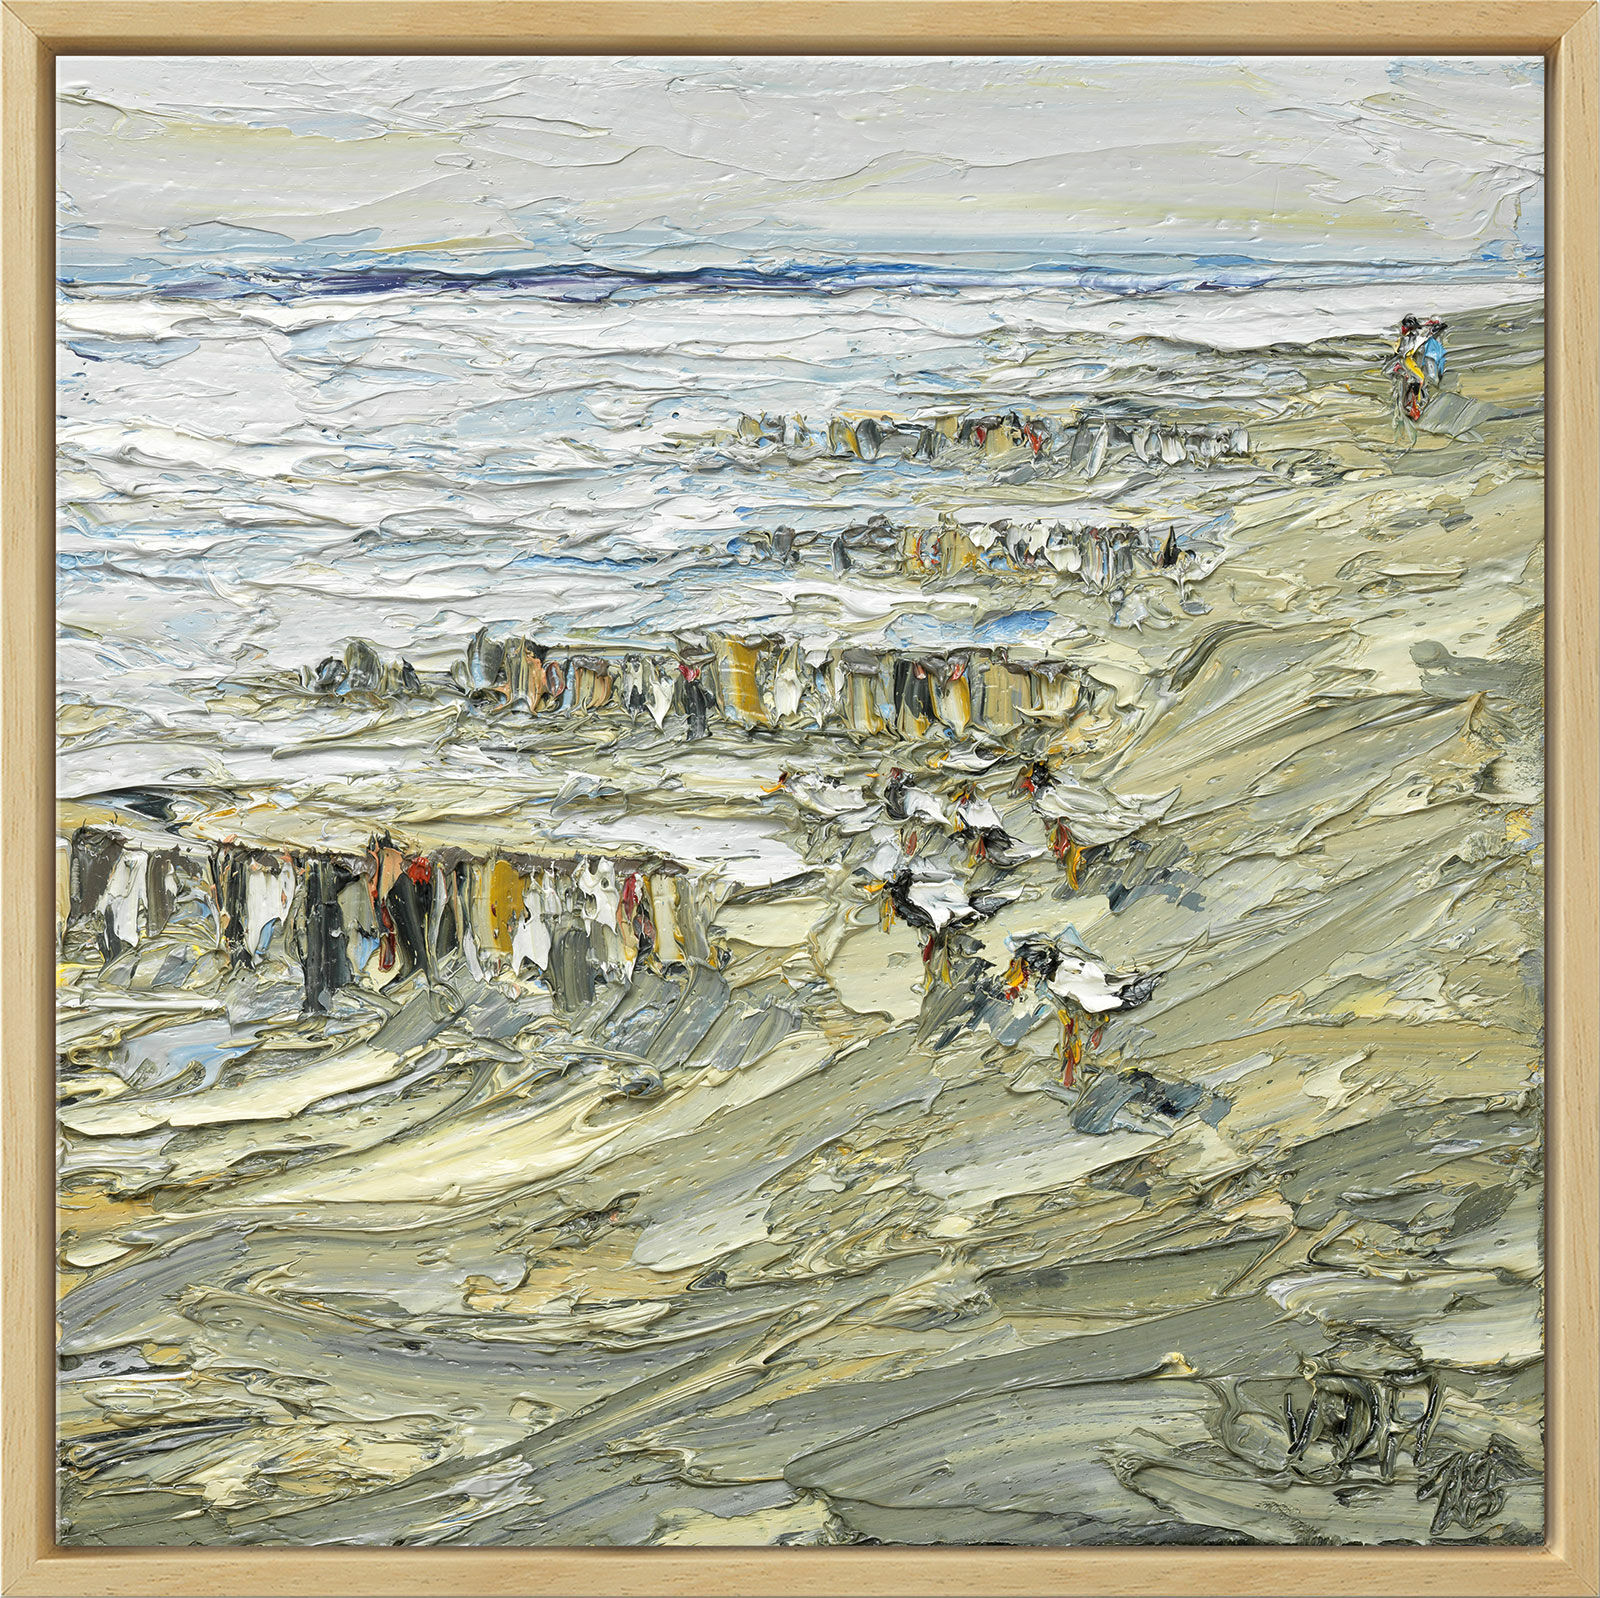 Beeld "Strandwandeling na storm" (2018), natuurlijke ingelijste versie von Nikolaus von der Assen